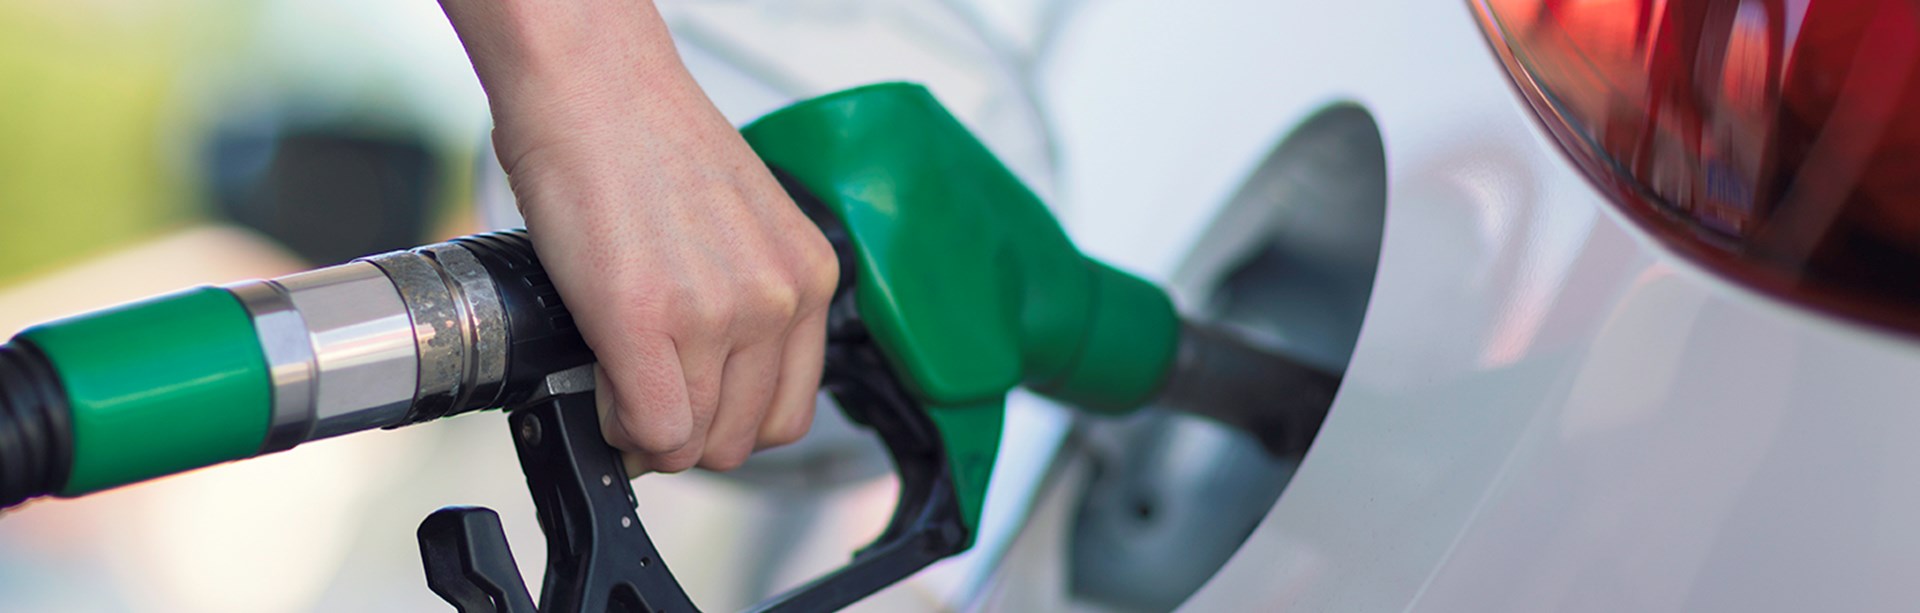 Dyrare bensin och diesel ska minska bilåkandet